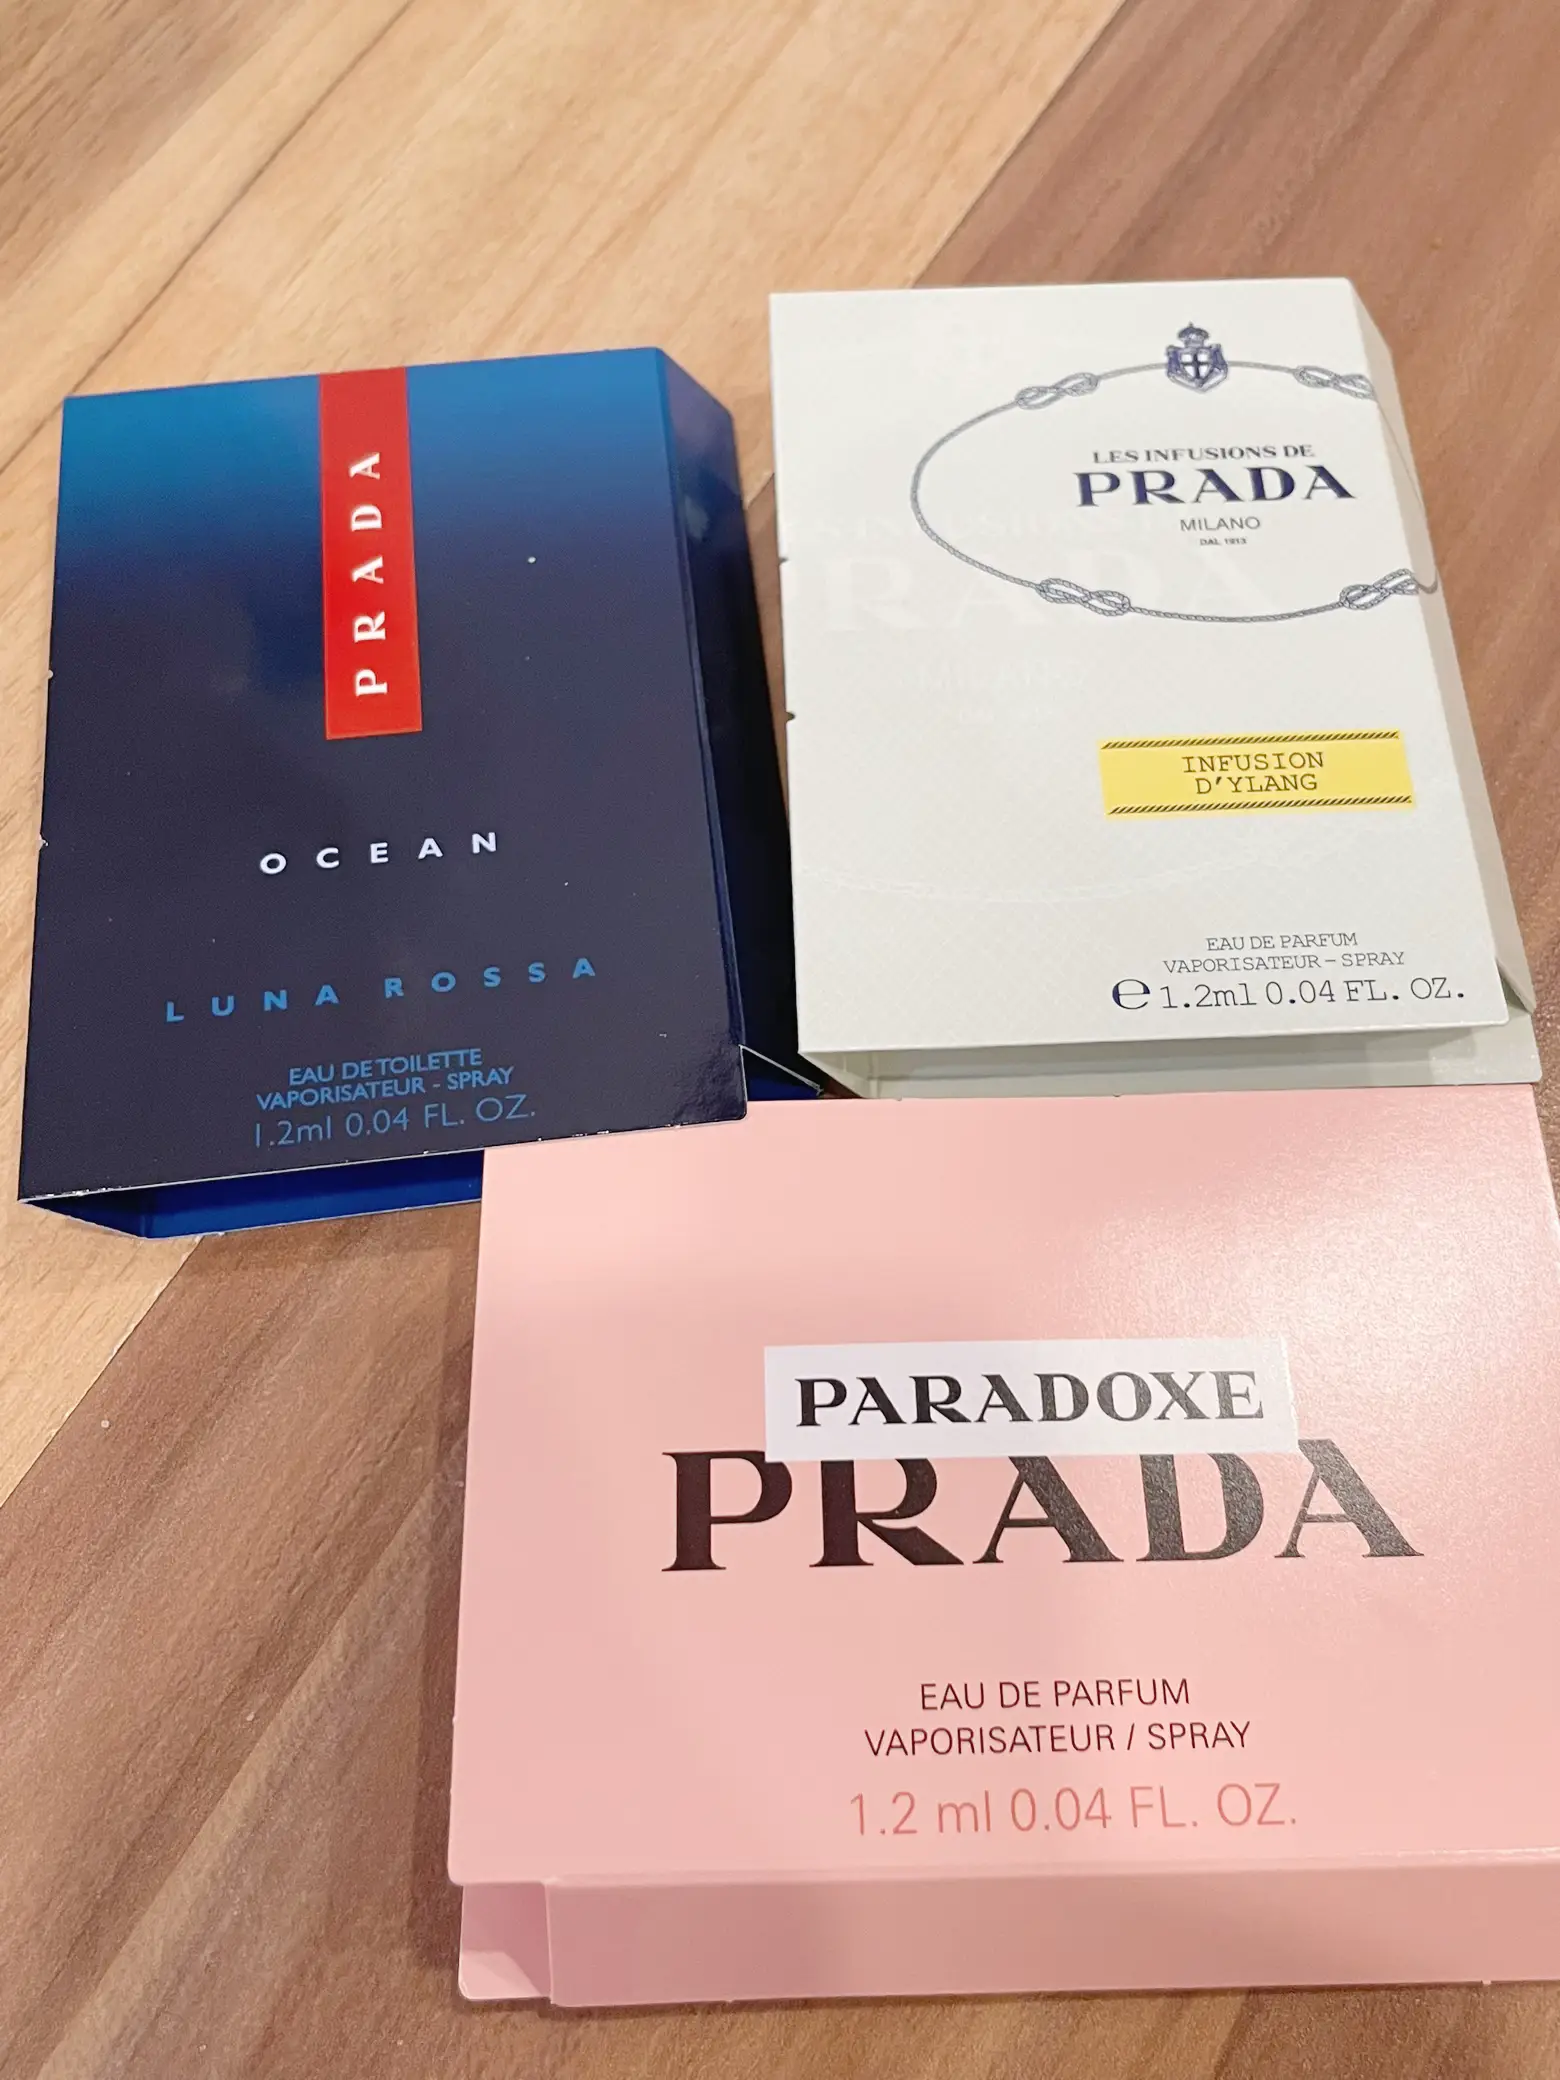 Free 3pc Prada perfume samples 🇸🇬's images(5)